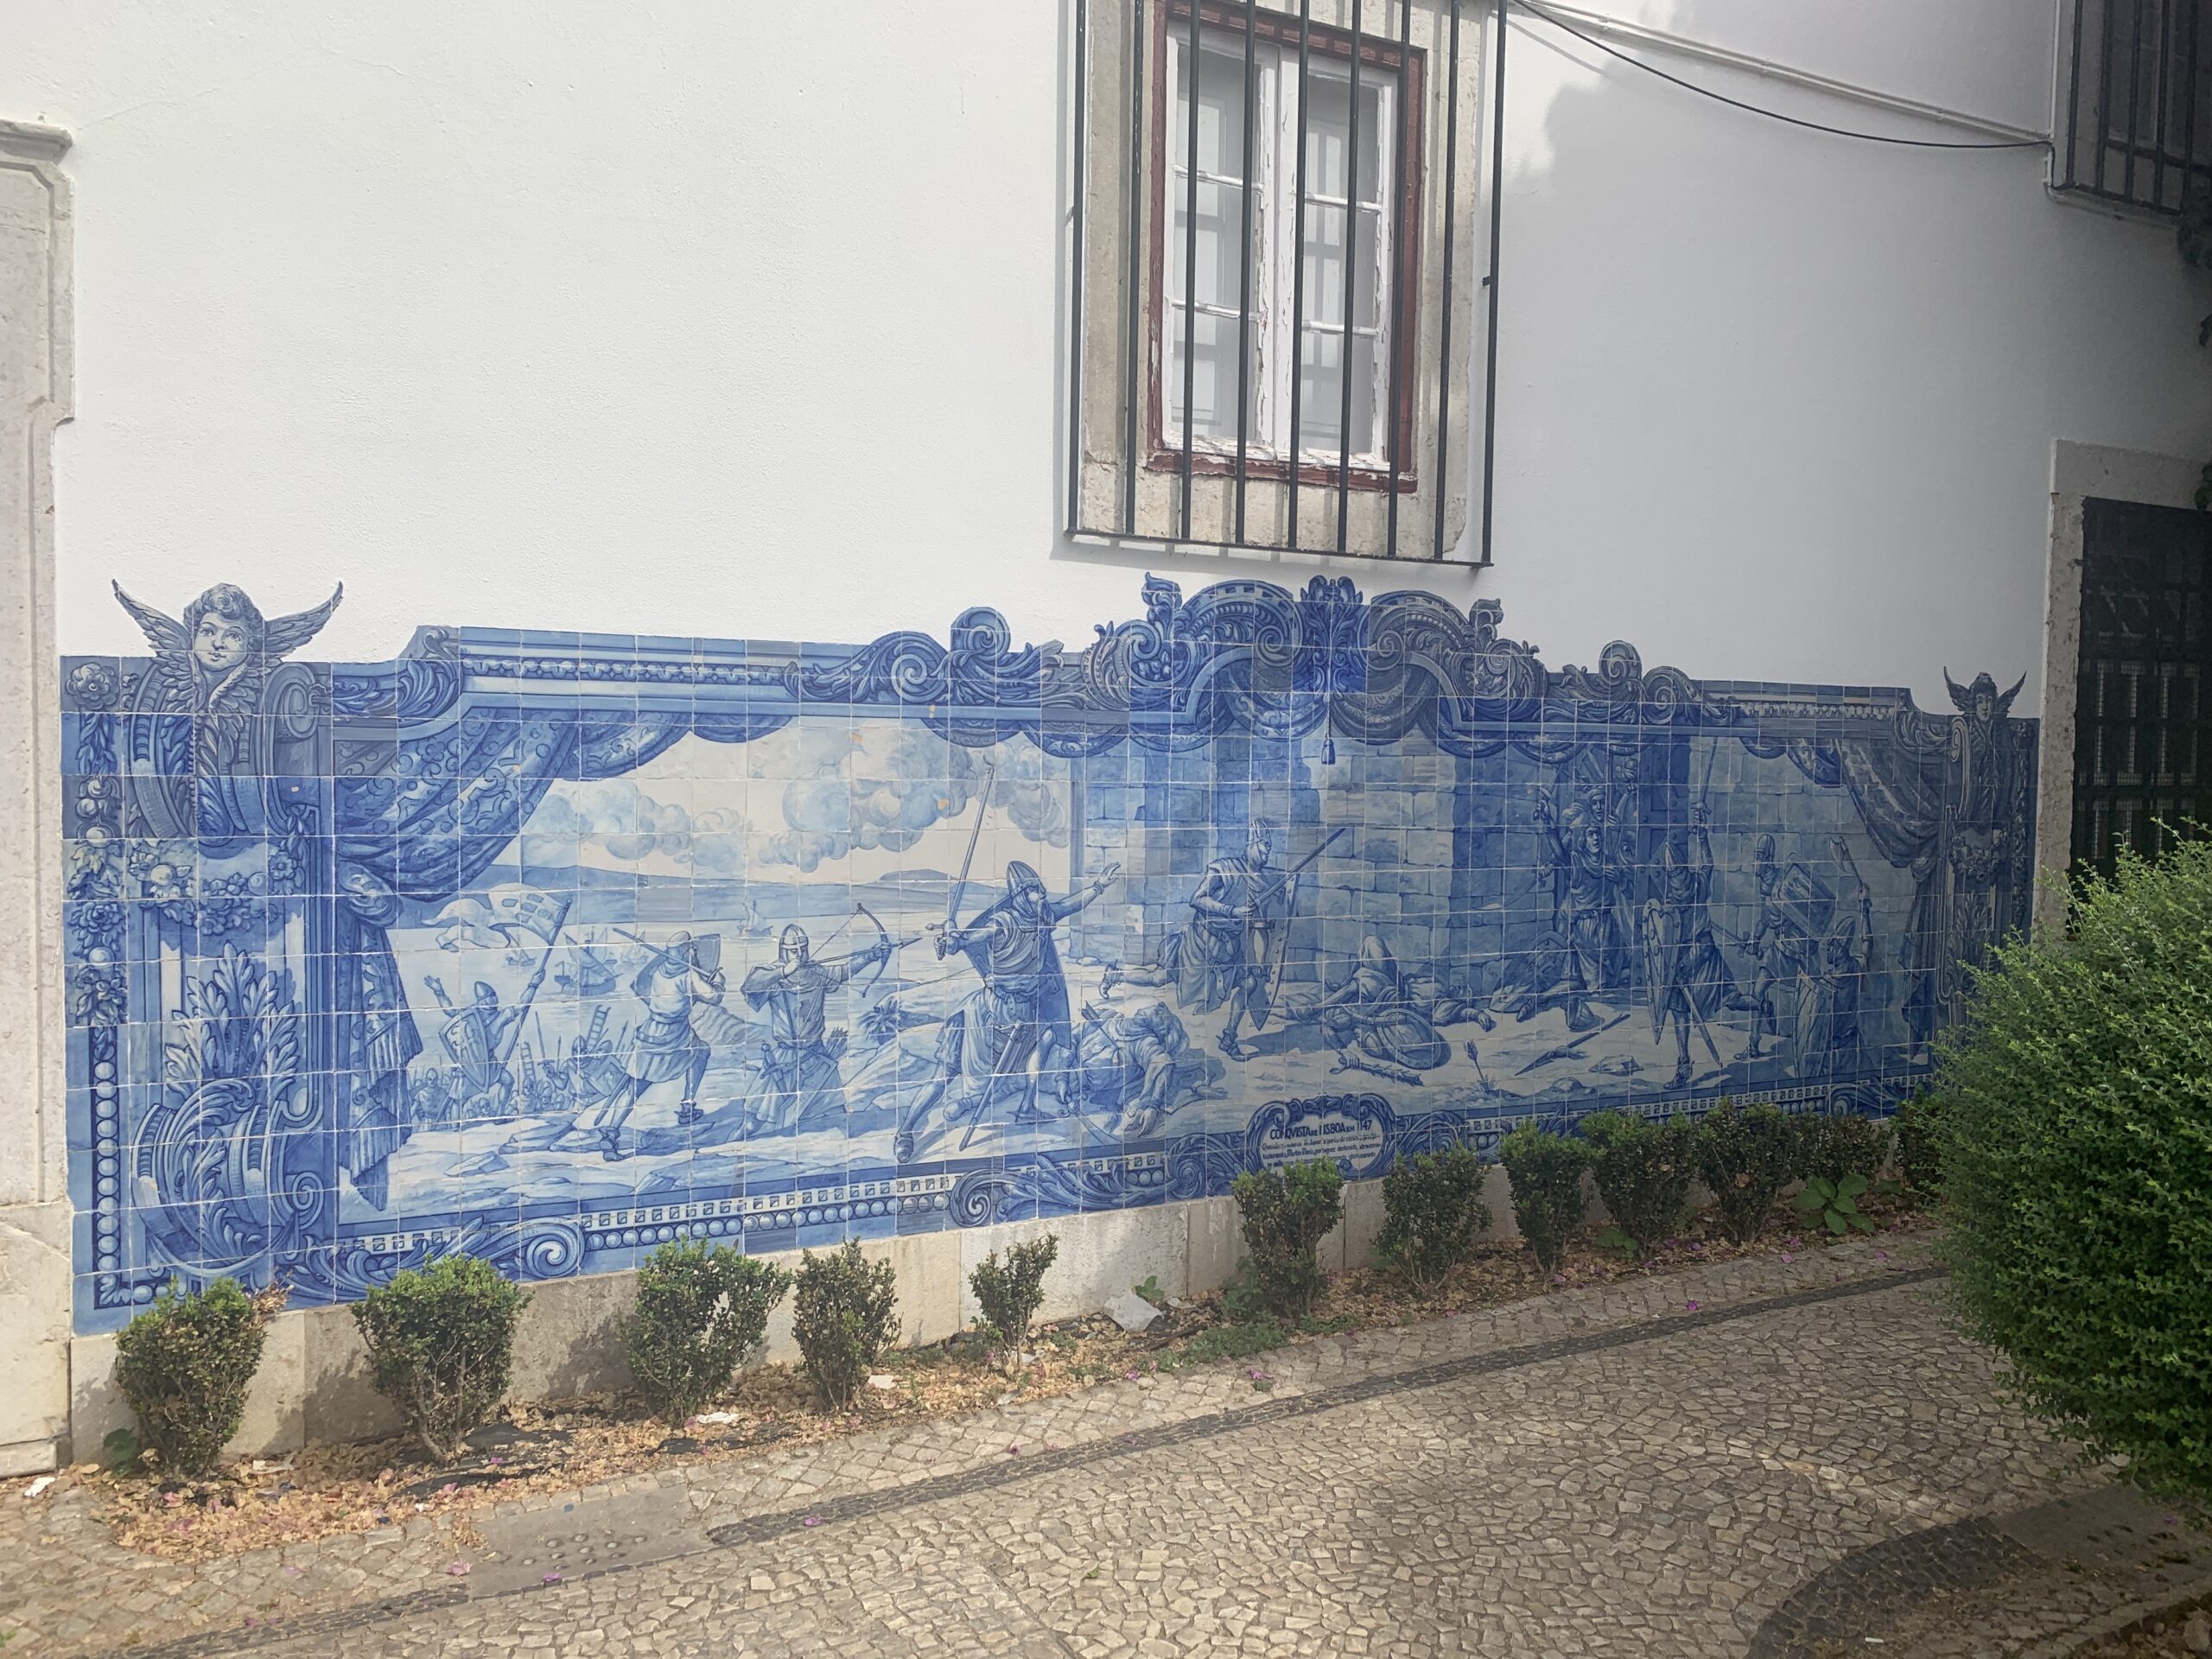 Mural at Miradouro da Igreja da Graça.